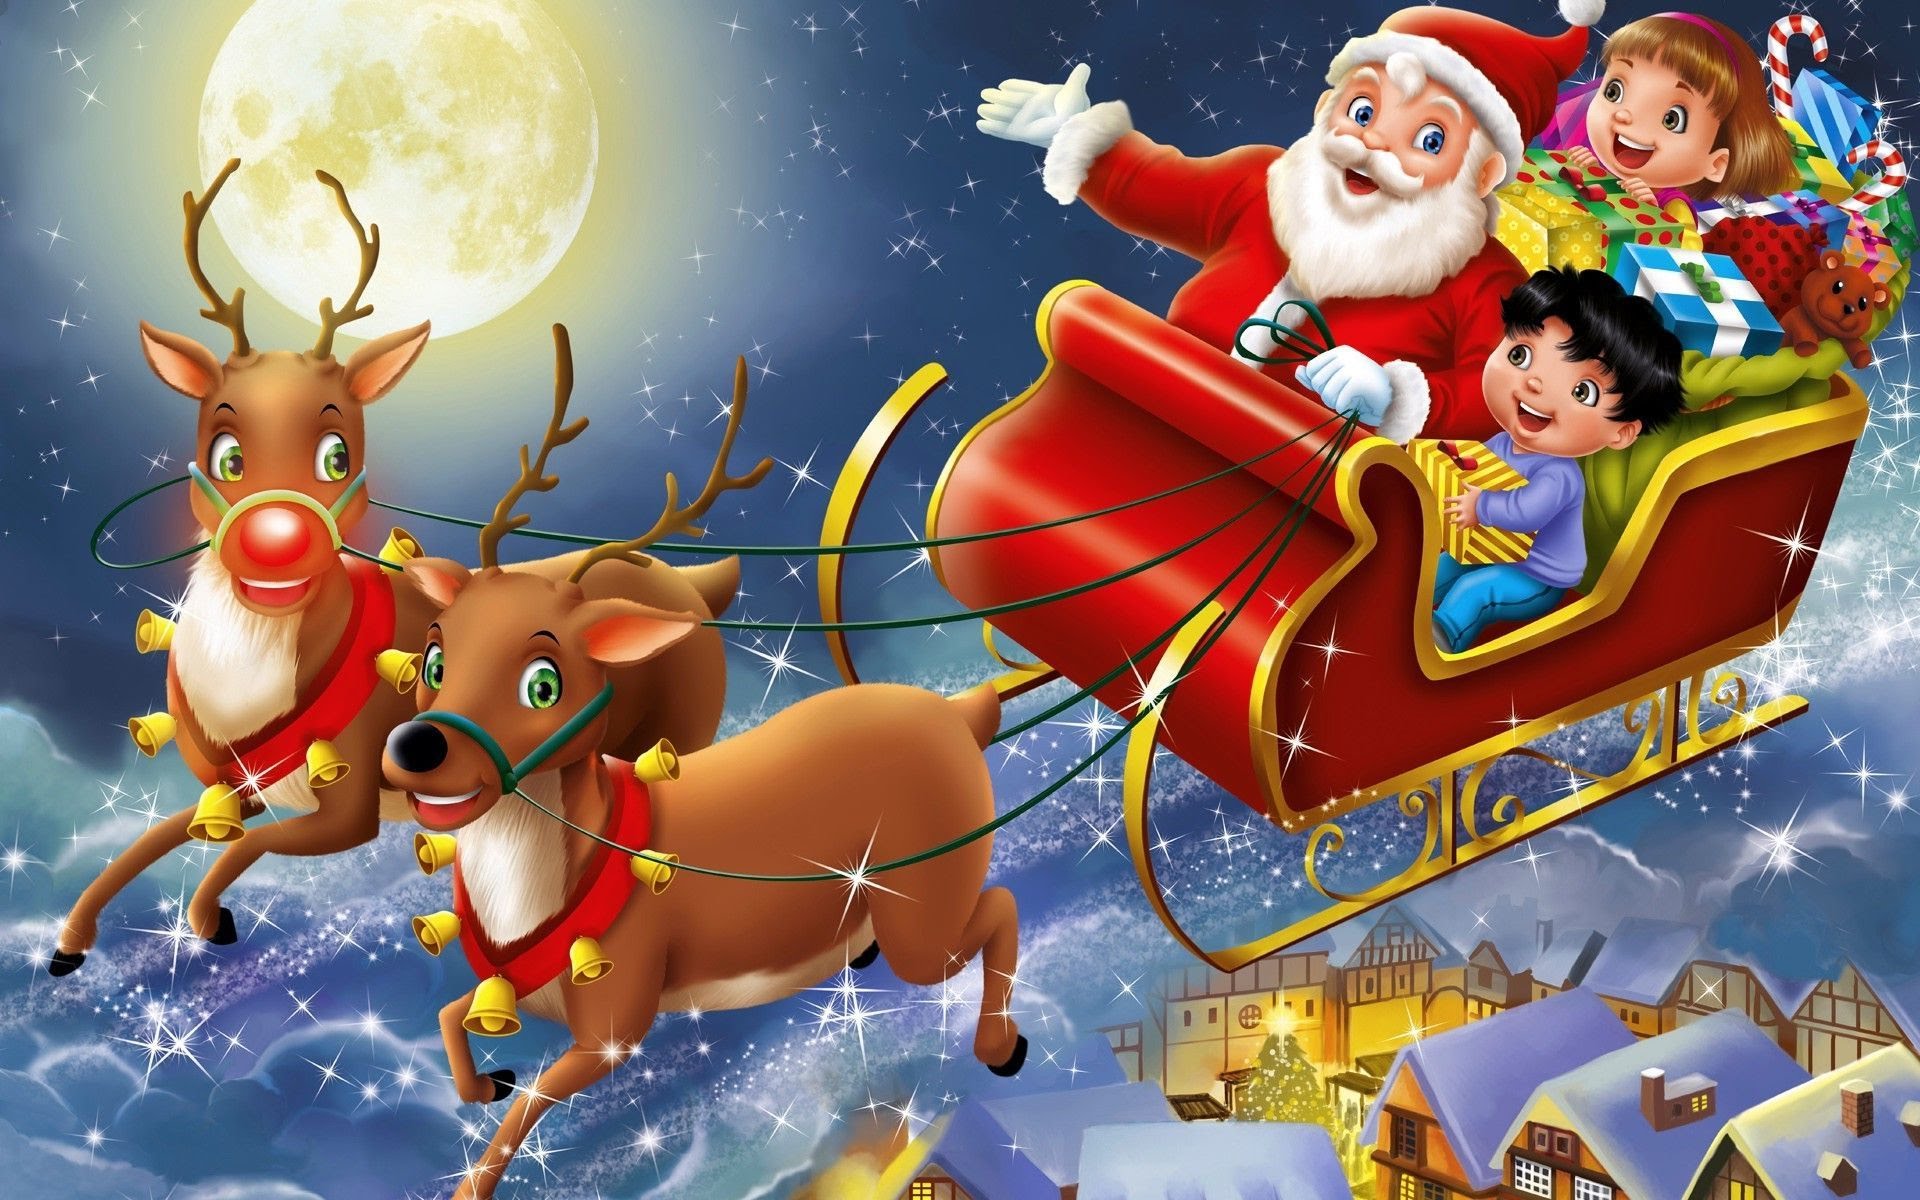 Ông già Noel với áo đỏ truyền thống và râu dài cười tươi sẽ khơi gợi điều gì đó trong trái tim của bạn. Cùng xem những hình ảnh đáng yêu của ông già Noel và chuẩn bị sẵn sàng đón nhận một ngày Giáng sinh ấm áp.